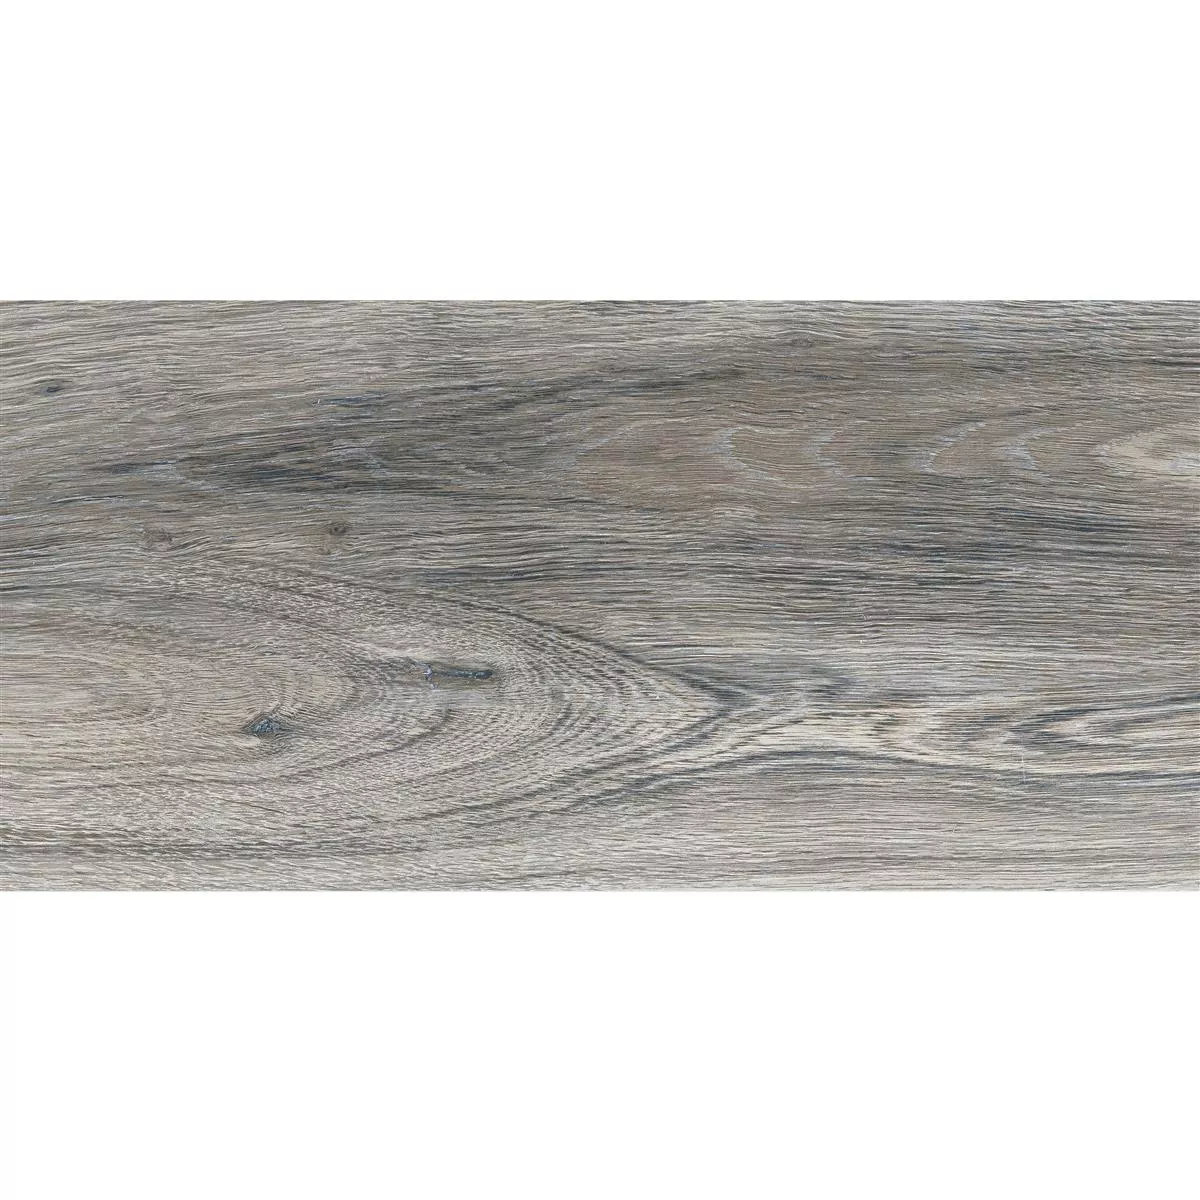 Próbka Płytki Podłogowe Goranboy Wygląd Drewna Ash 30x60cm / R10